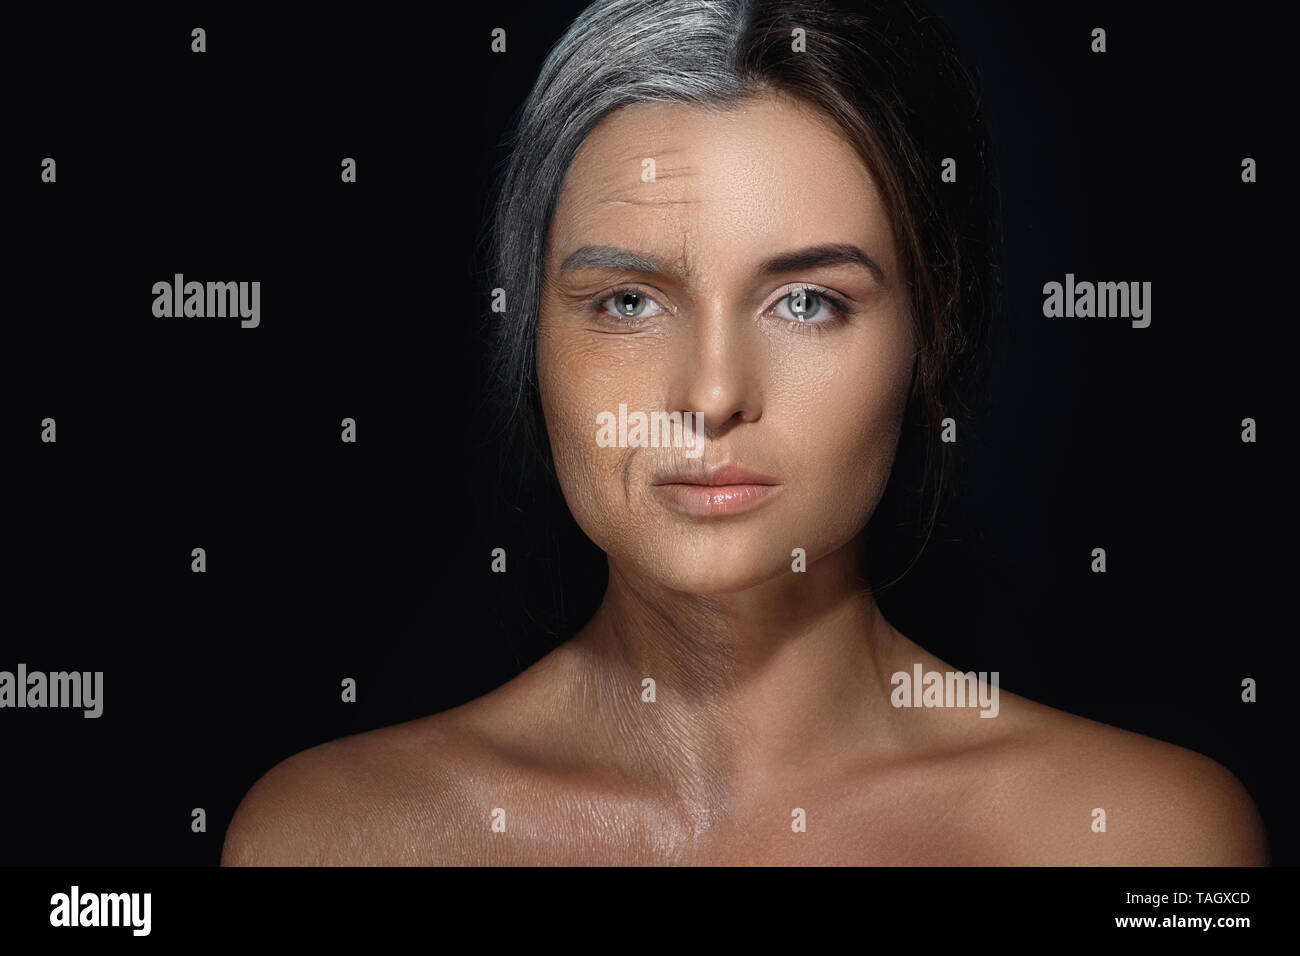 Aging Konzept. Vergleich von Jung und Alt. Wahre Resultat mit der Arbeit der professionellen Make-up Artist erreicht. Nicht CGI. Stockfoto